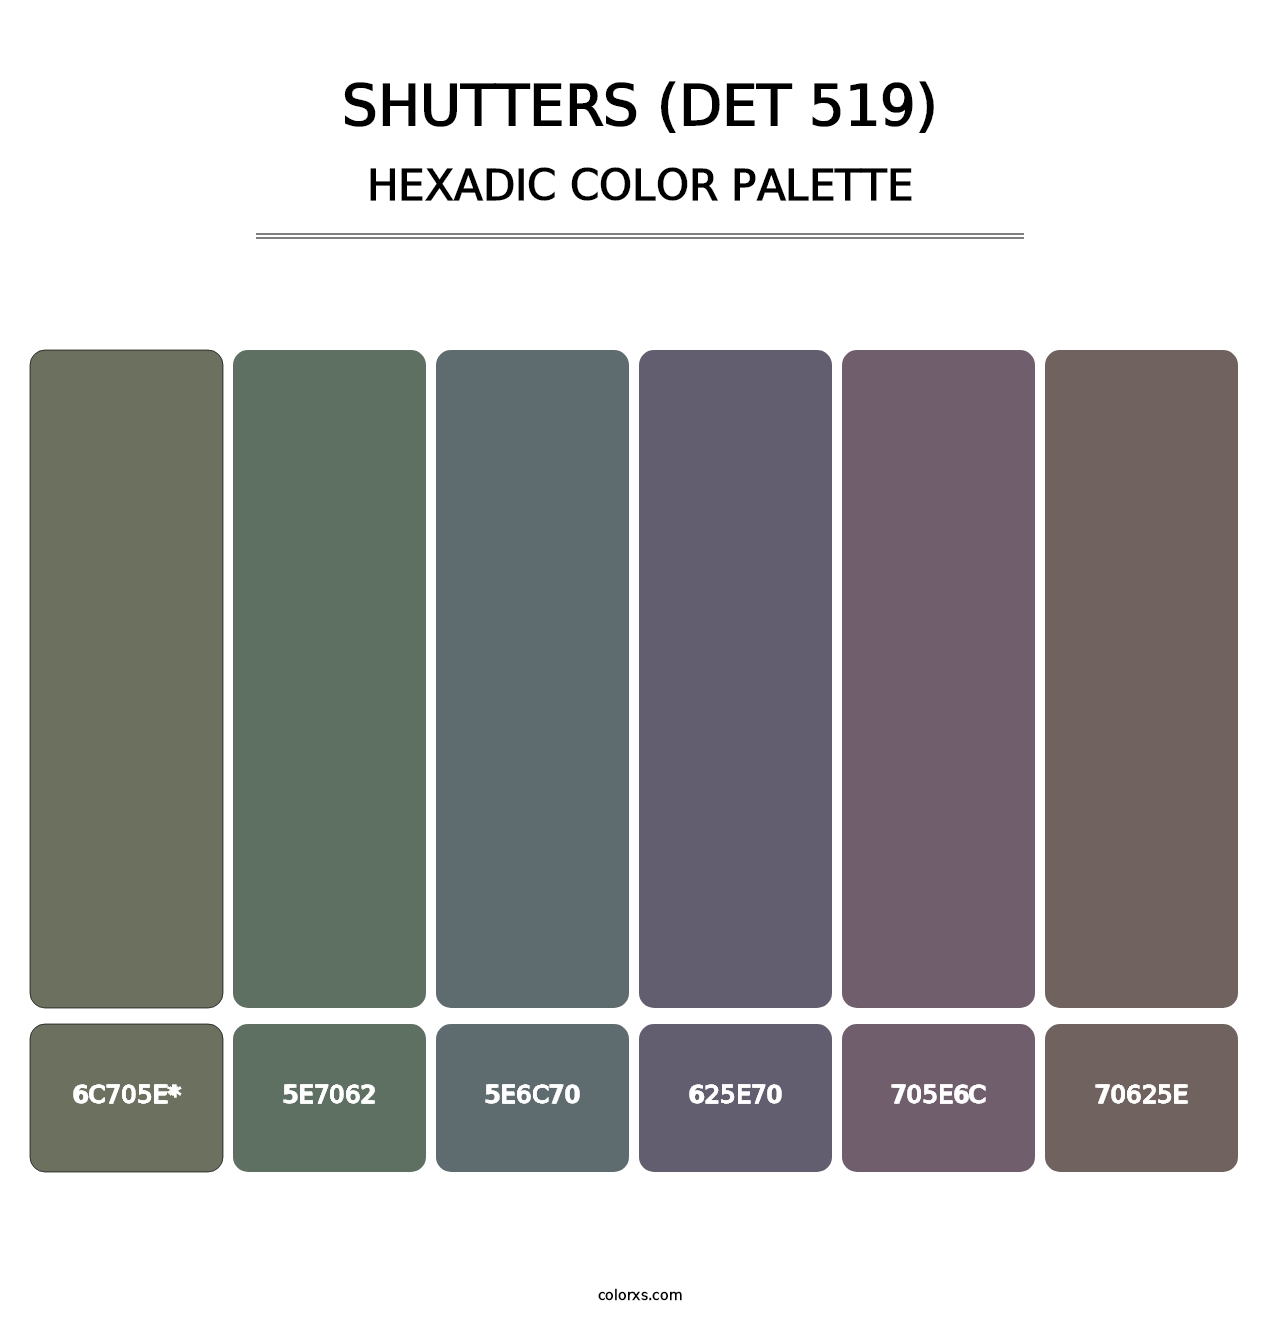 Shutters (DET 519) - Hexadic Color Palette